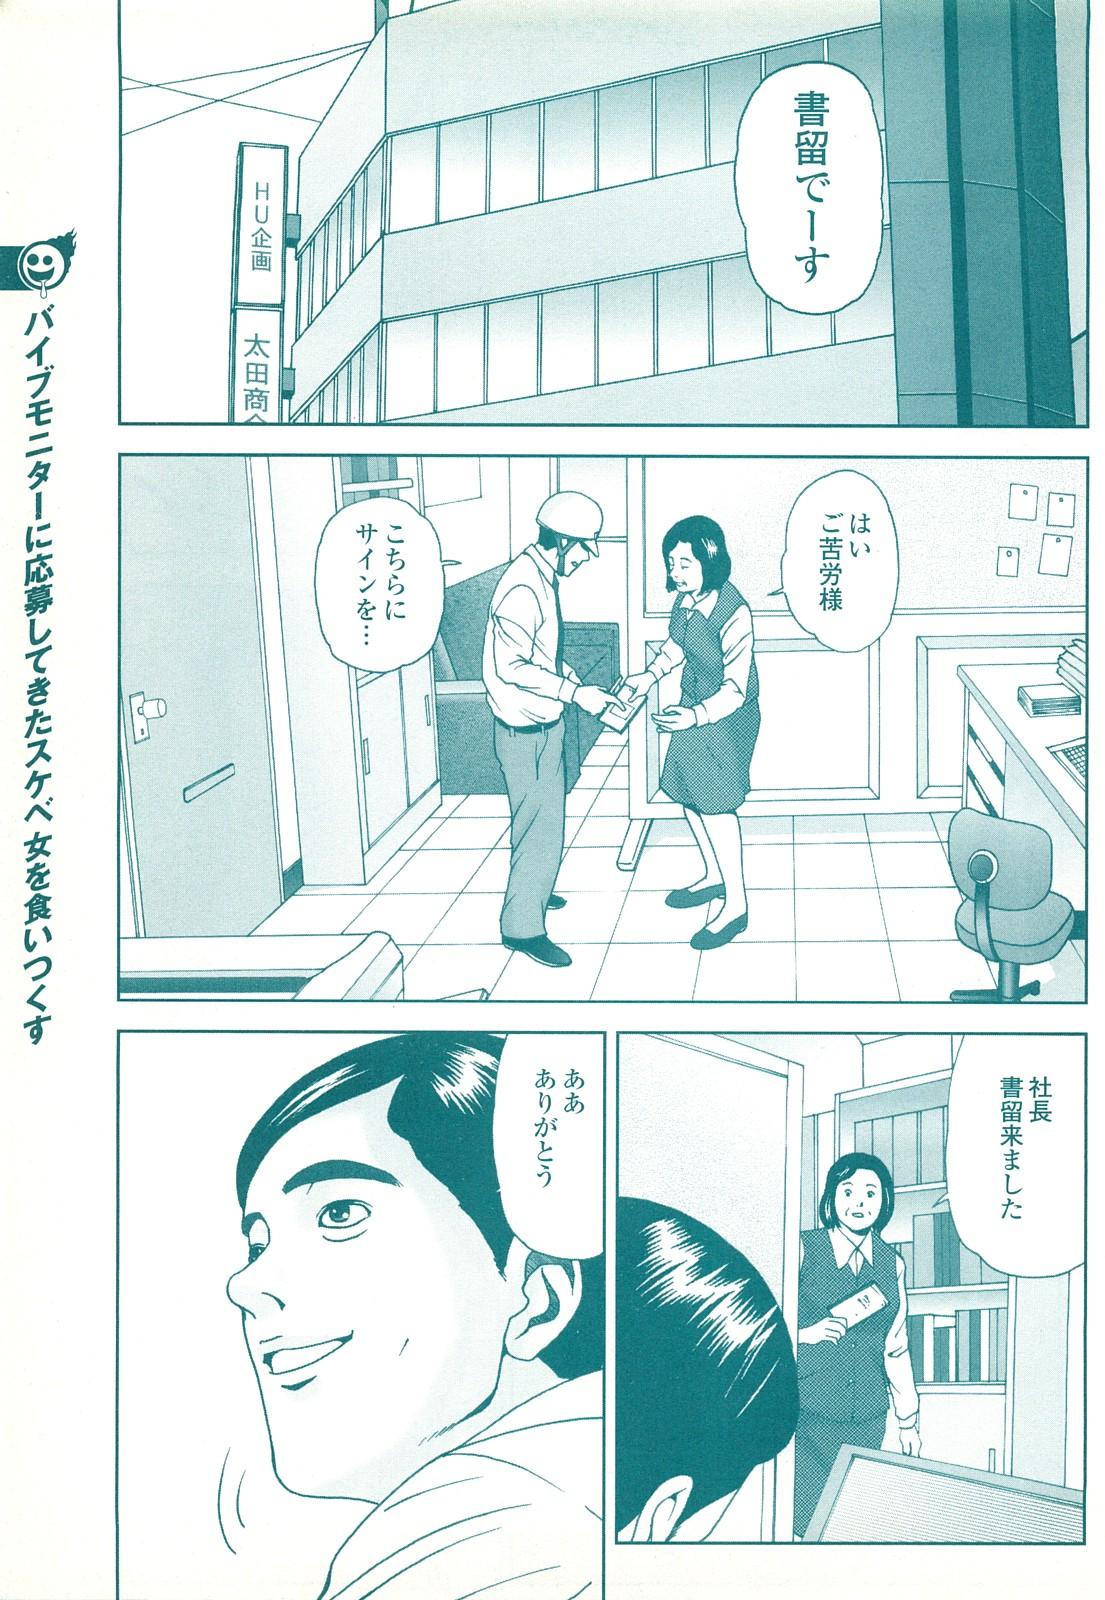 コミック裏モノJAPAN Vol.18 今井のりたつスペシャル号 160